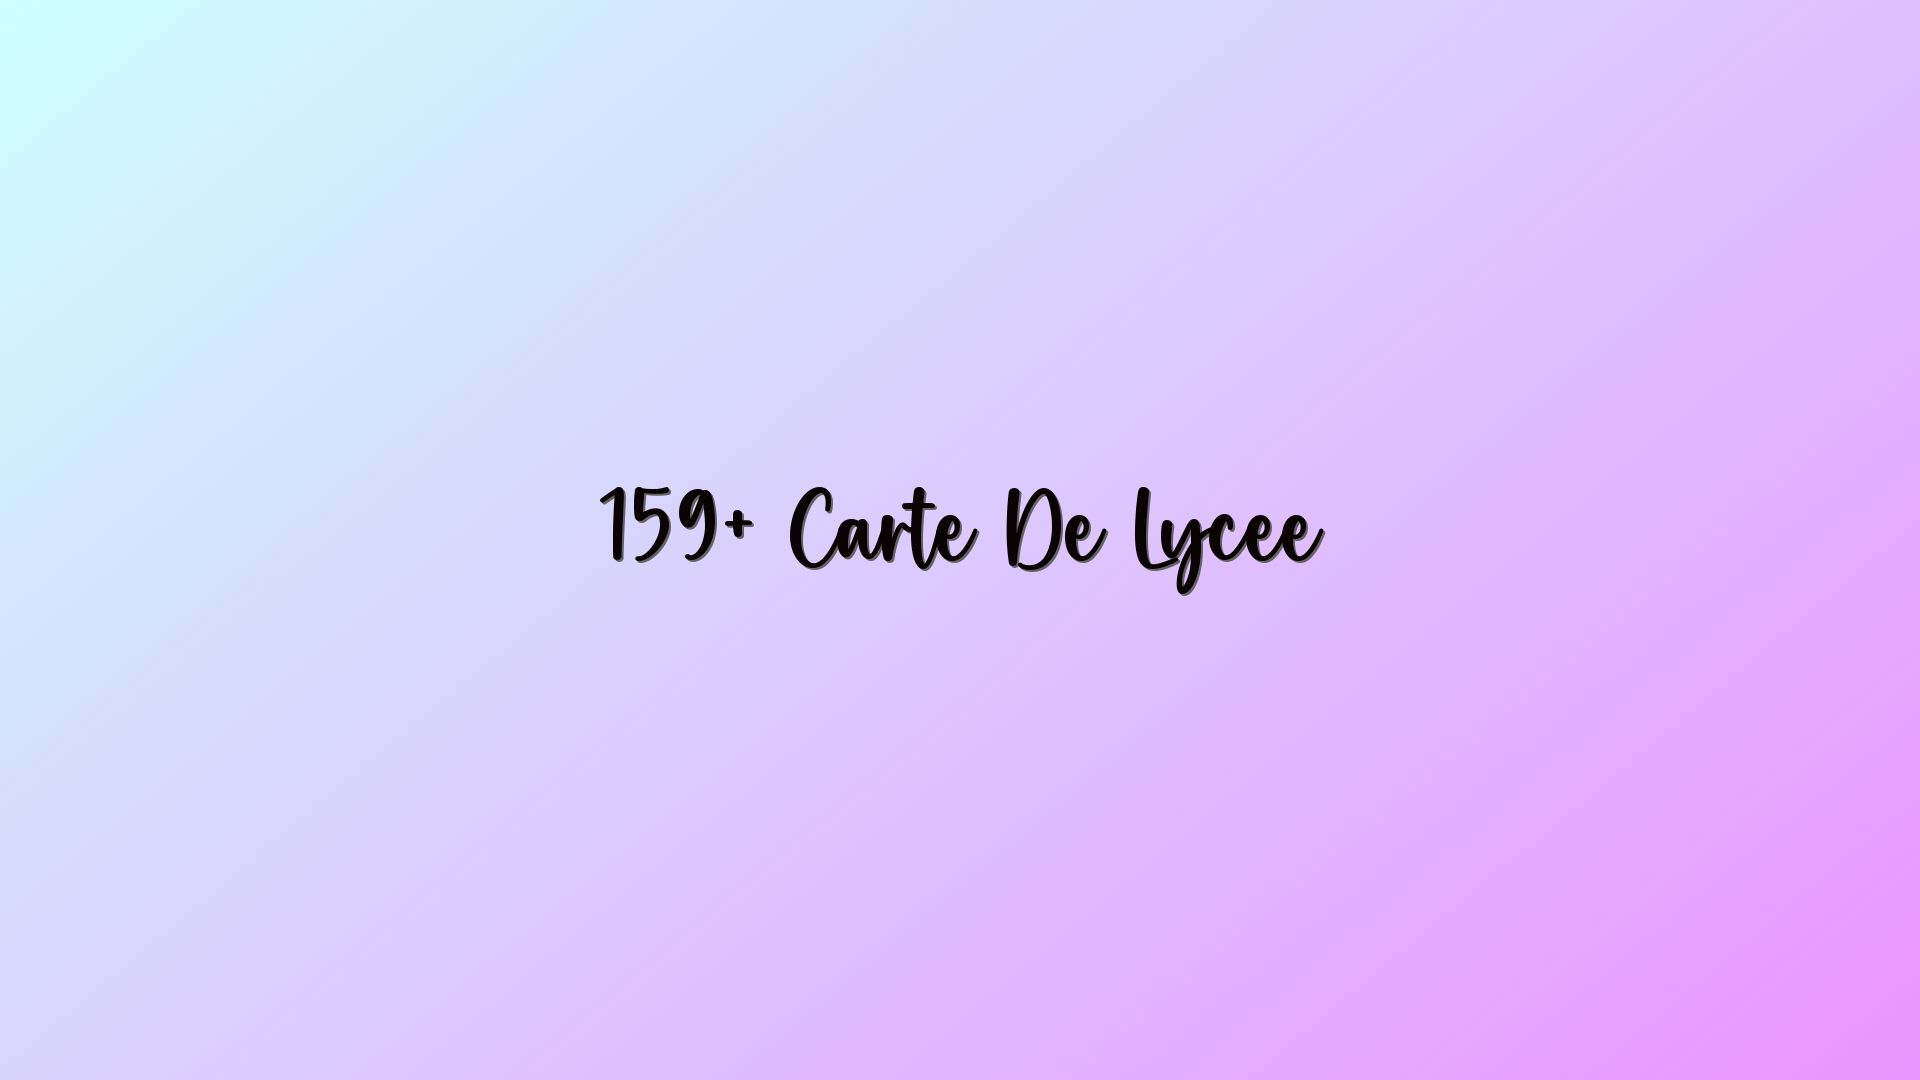 159+ Carte De Lycee